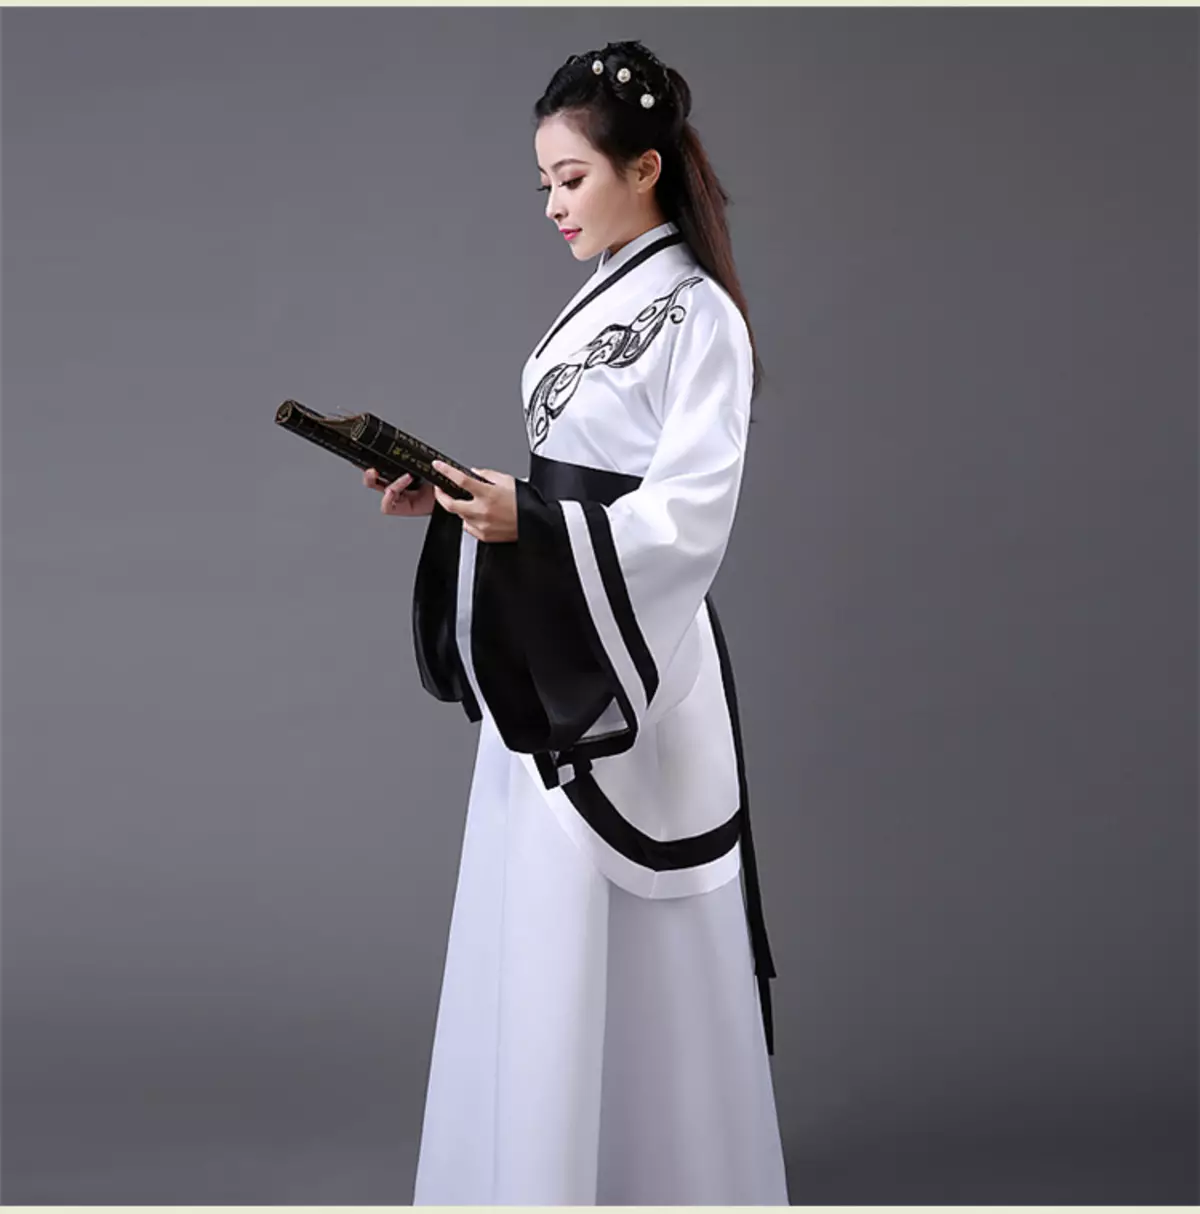 החליפה הלאומית הסינית (73 תמונות): תלבושת נקבה מסורתית של עמי סין, חליפה לילדה 1377_68